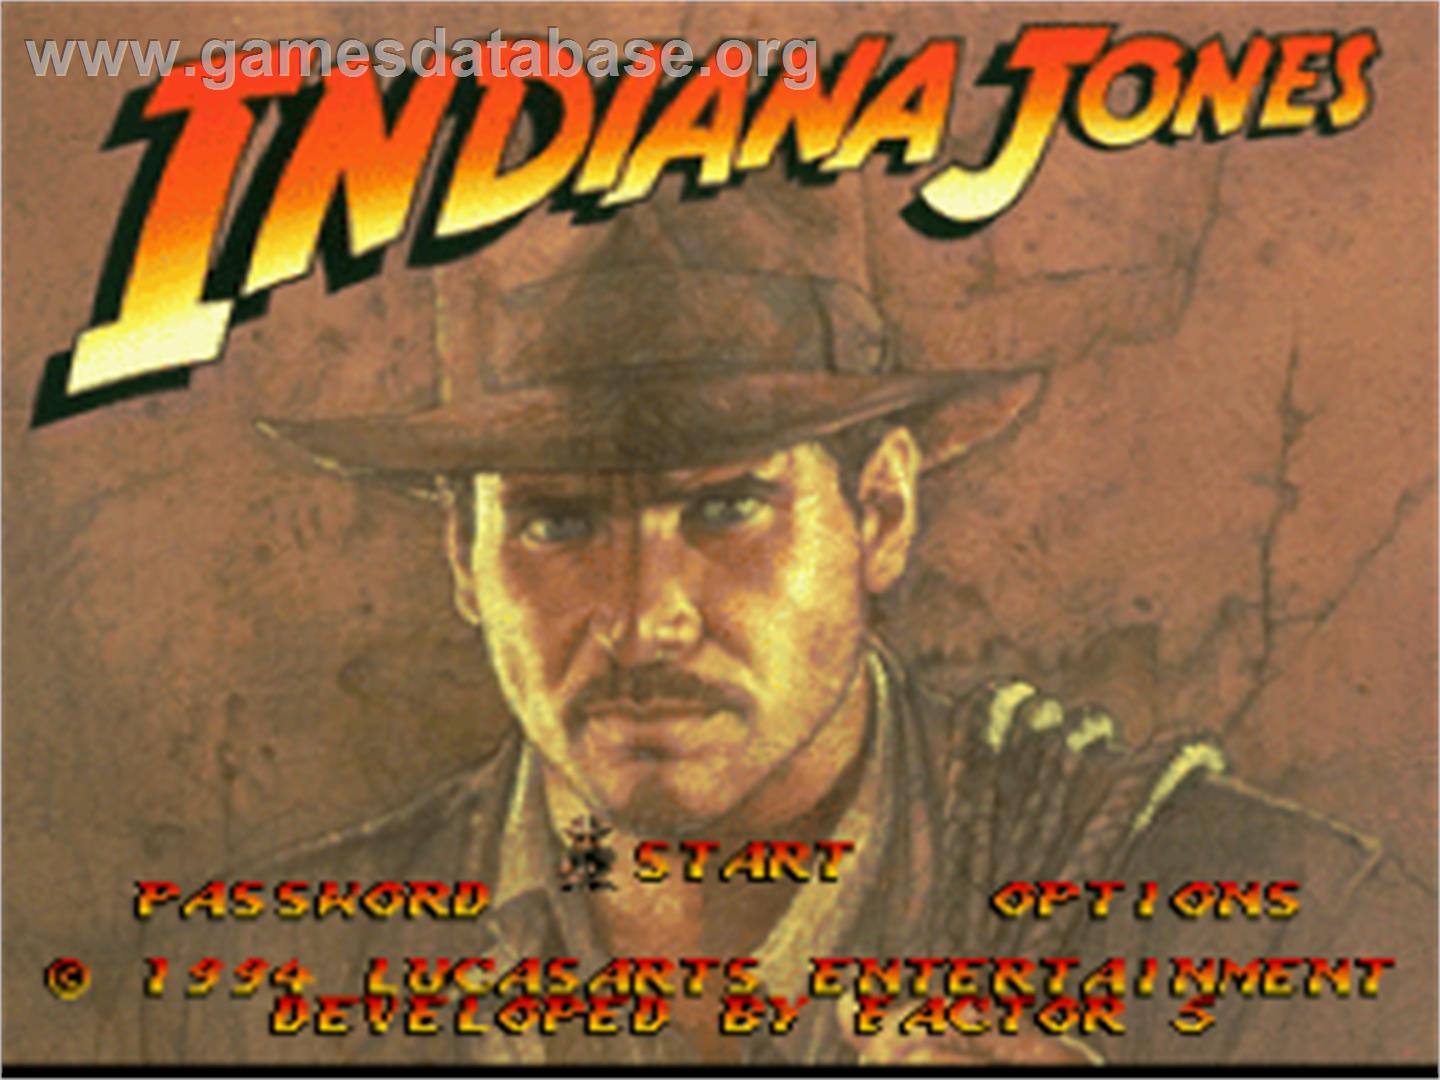 Indiana Jones' Greatest Adventures - Nintendo SNES - Artwork - Title Screen